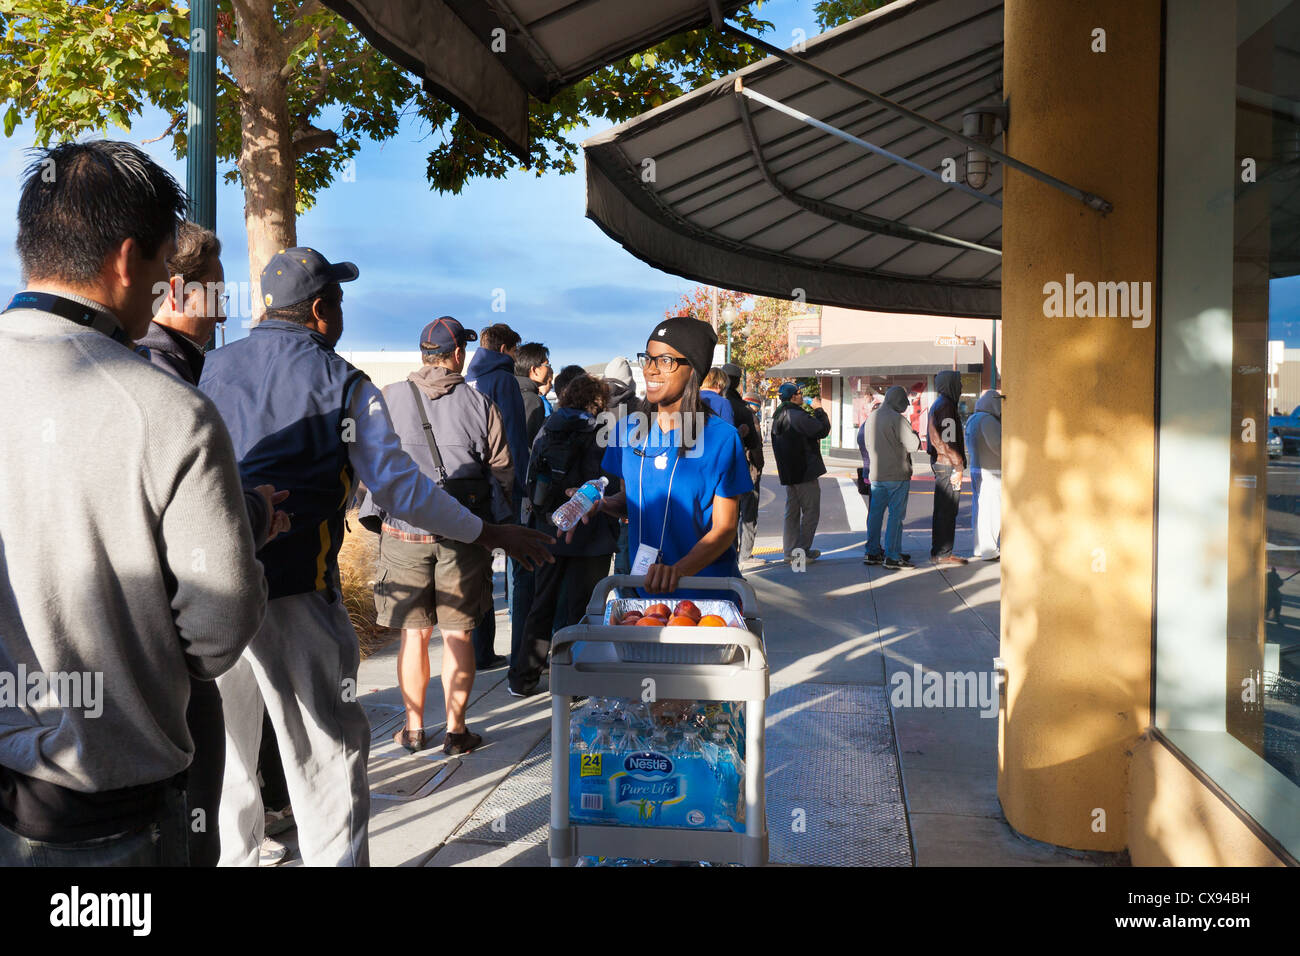 Sett. 21, 2012 dipendente Apple offre cibo gratis ai clienti in fila per acquistare il nuovo iPhone 5 al negozio Apple di Berkeley, CA Foto Stock